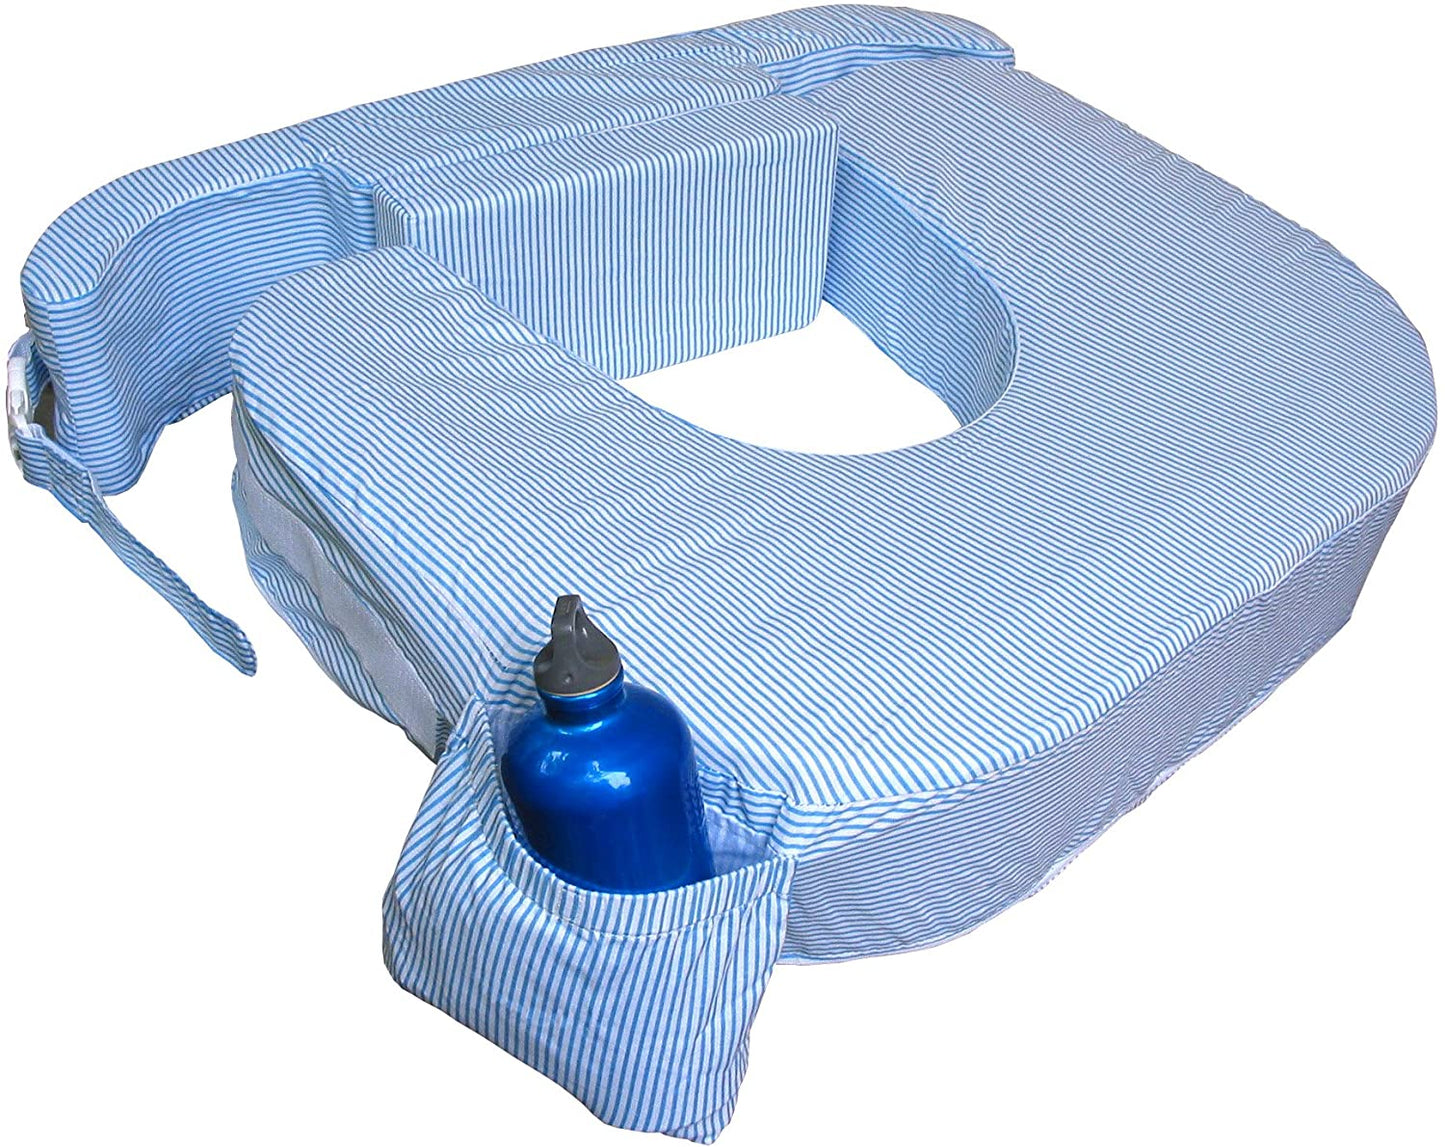 Original Nursing Posture Pillow, Blue Striped